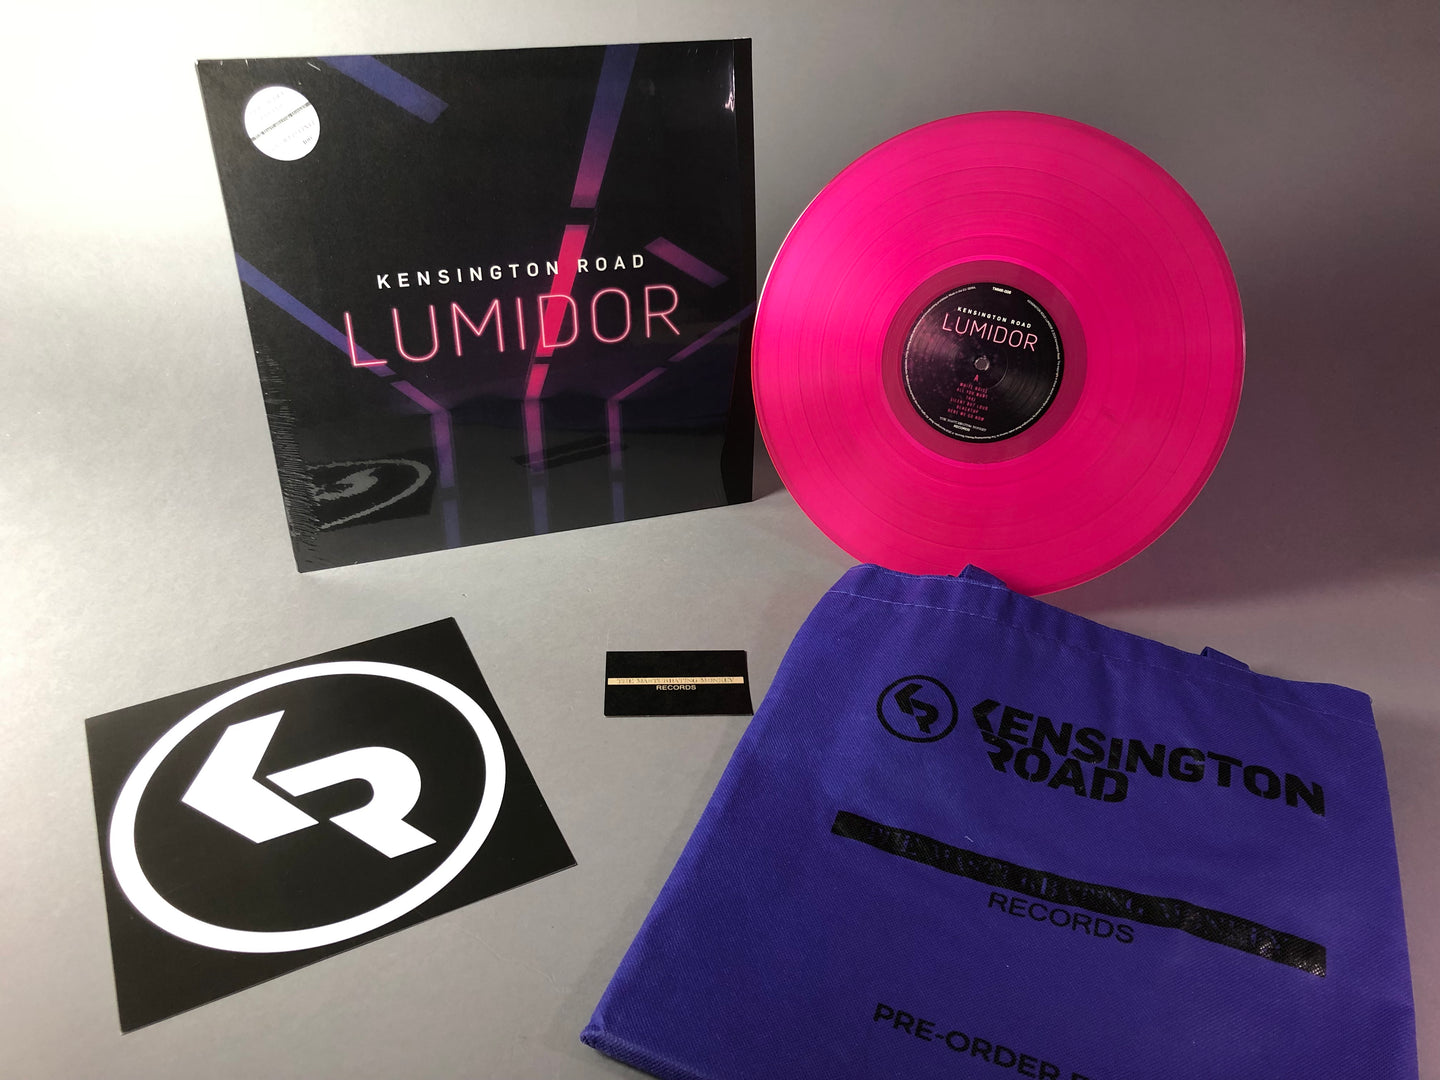 PRE-ORDER EDITION - Kensington Road -Lumidor- 180g Colored Vinyl Edition